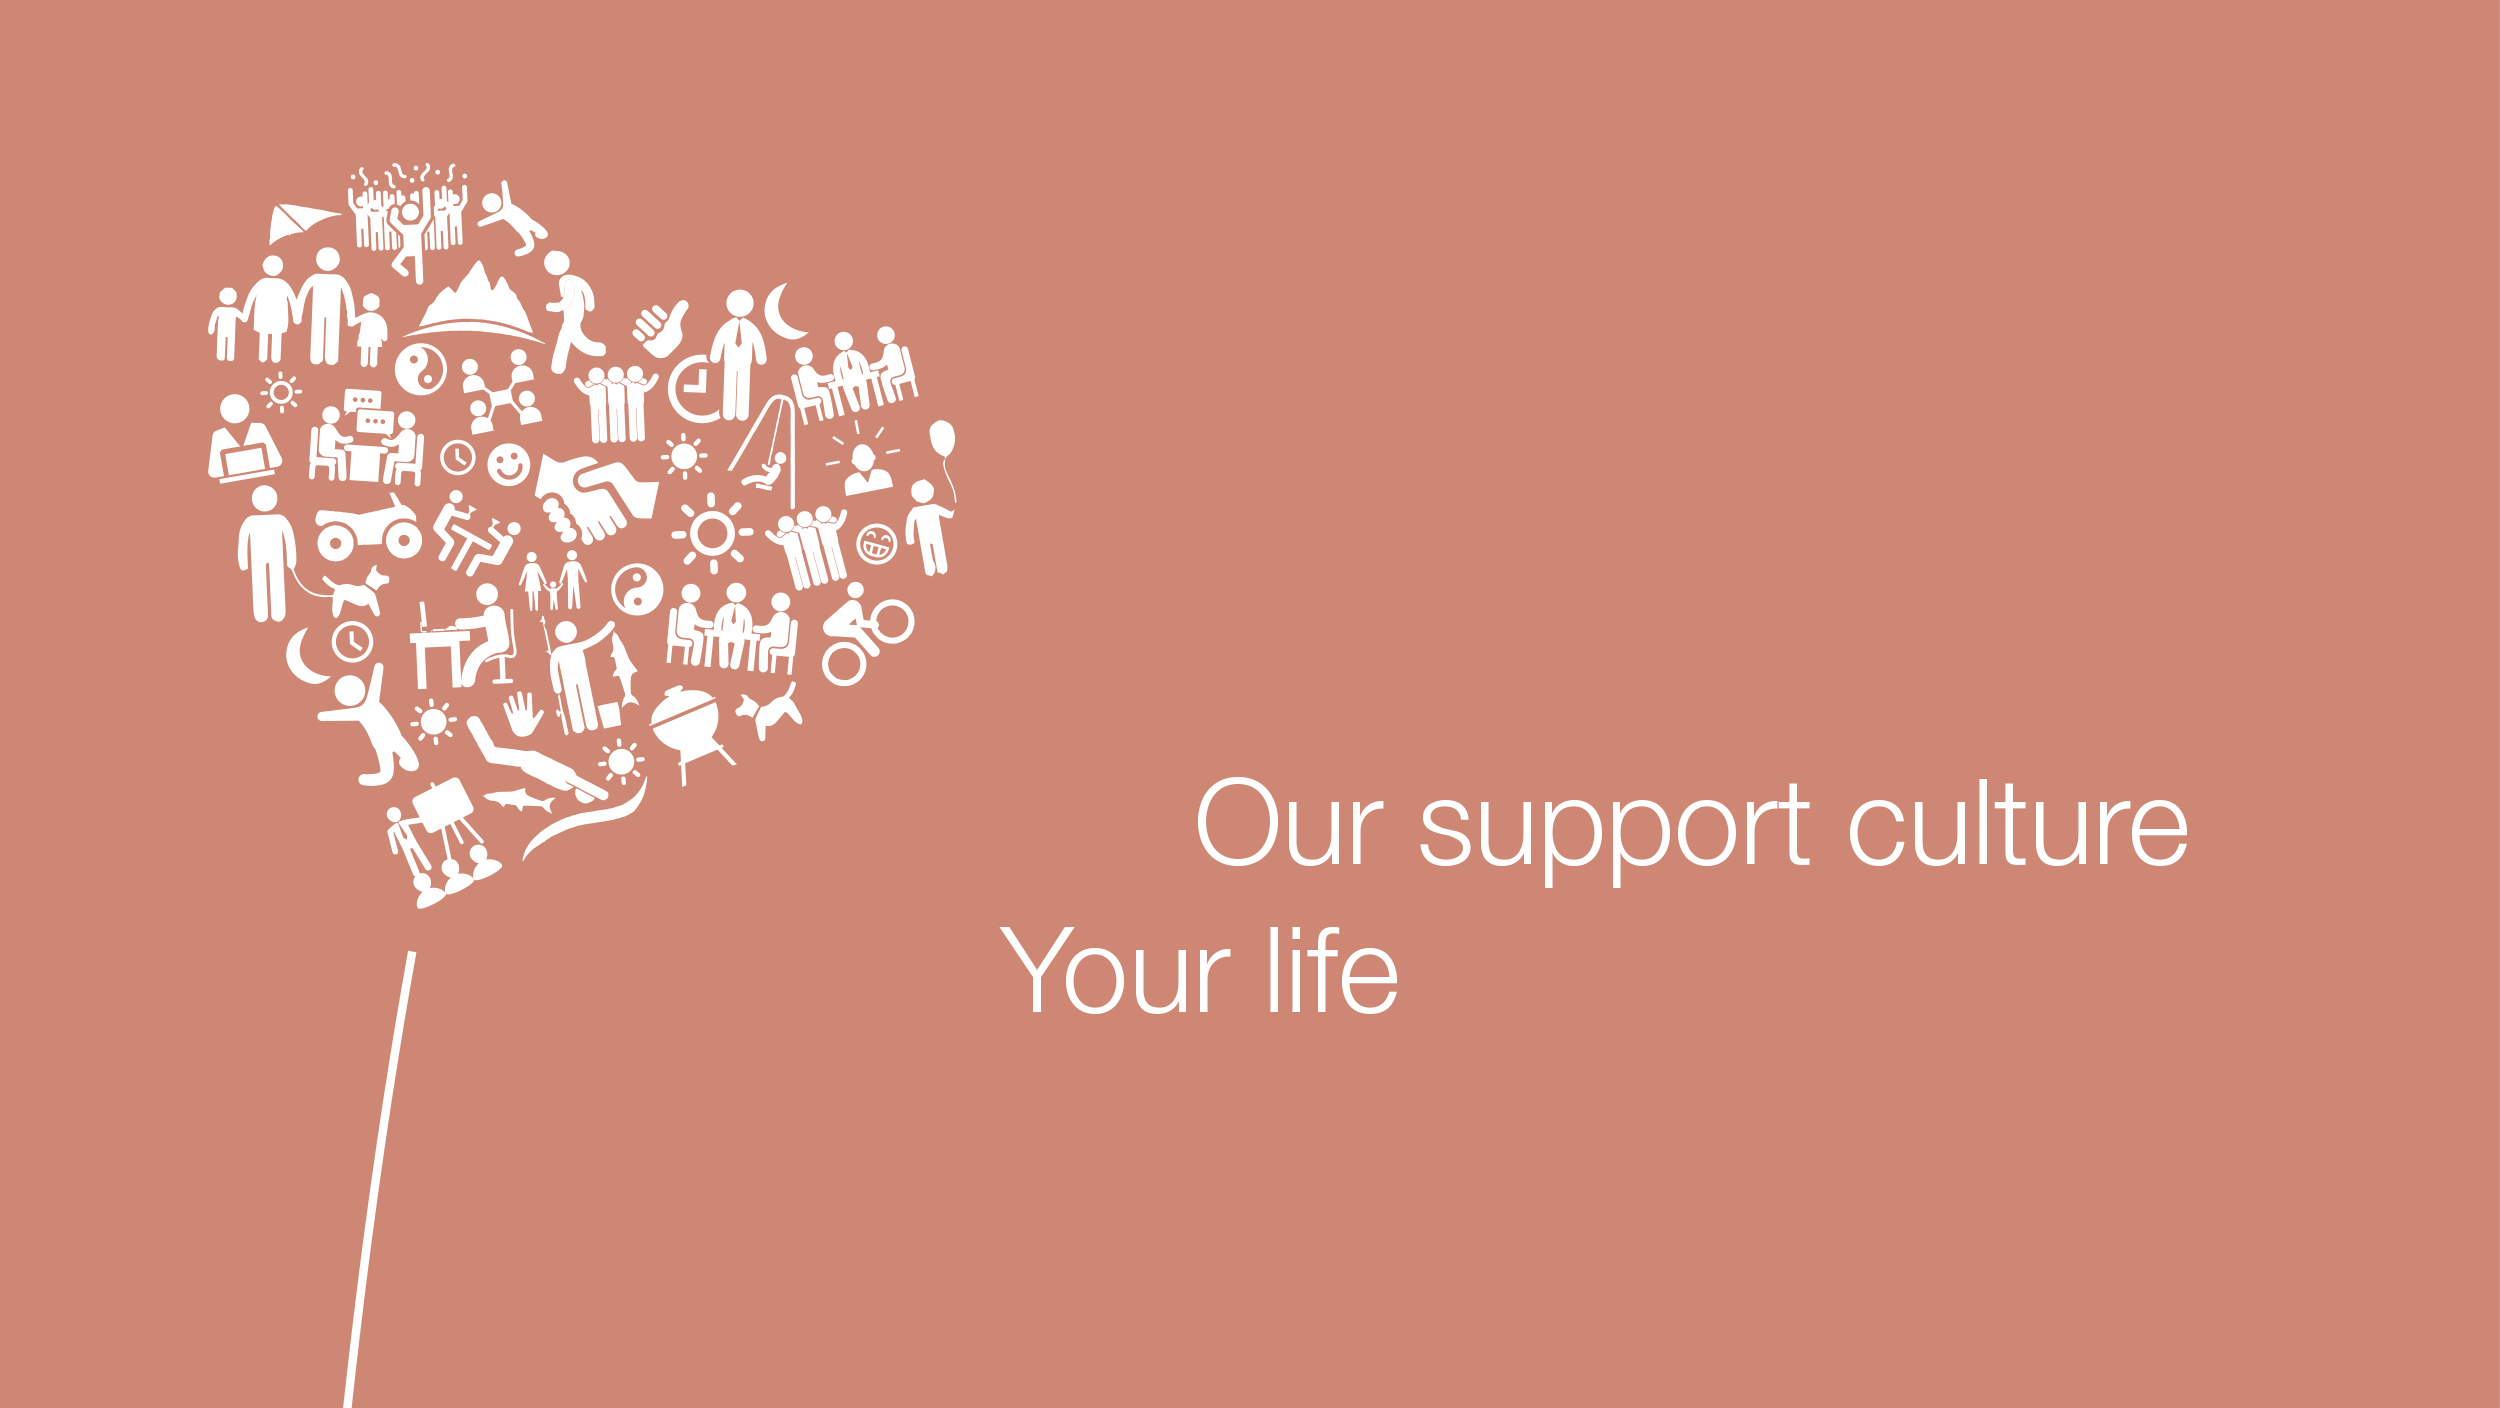 Paardenbloem hartvormige icoontjes, naast de slogan: Onze ondersteunende cultuur Jouw leven